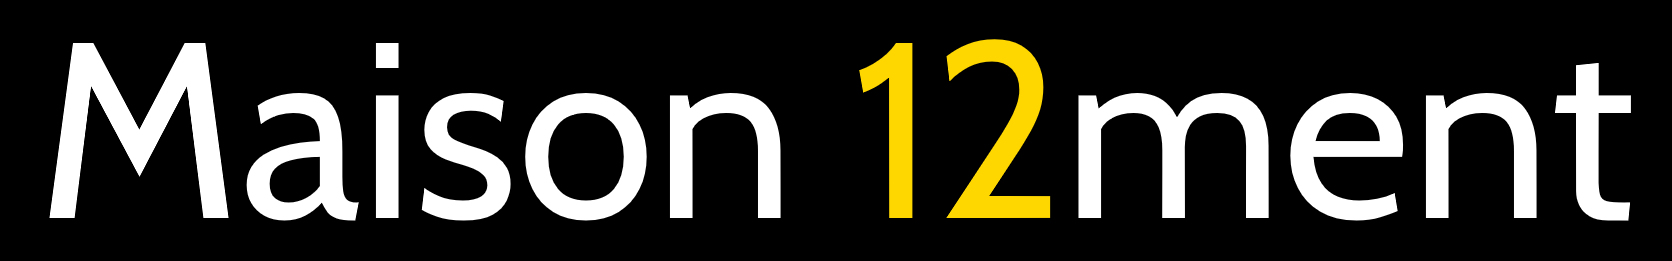 logo_12ment